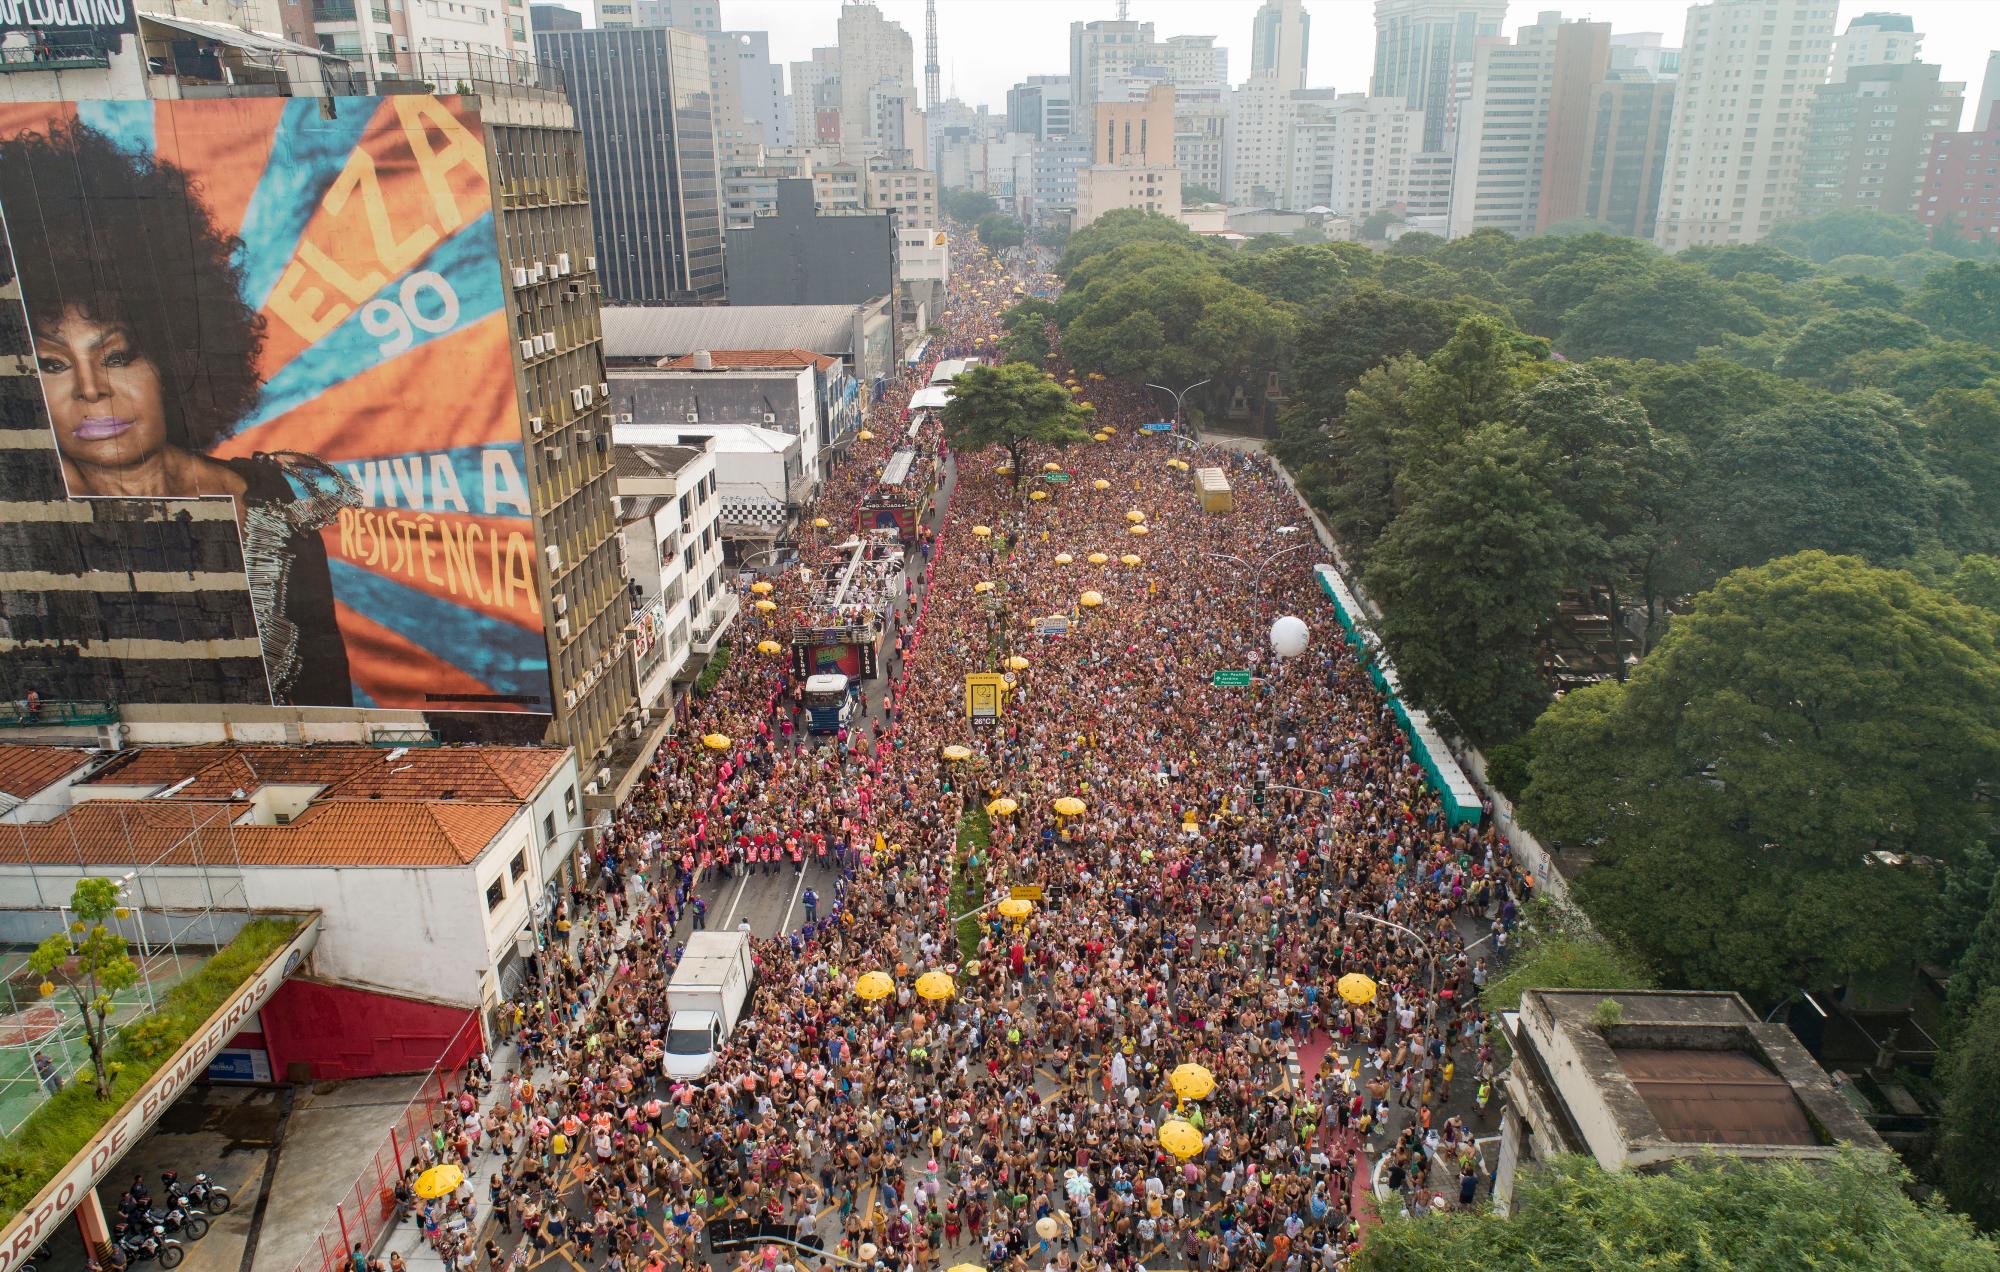 La gente llena la calle durante el desfile del “bloco” del carnaval Academicos do Baixo Augusta en Sao Paulo, Brasil, el domingo 16 de febrero de 2020. (Foto AP / Andre Penner)